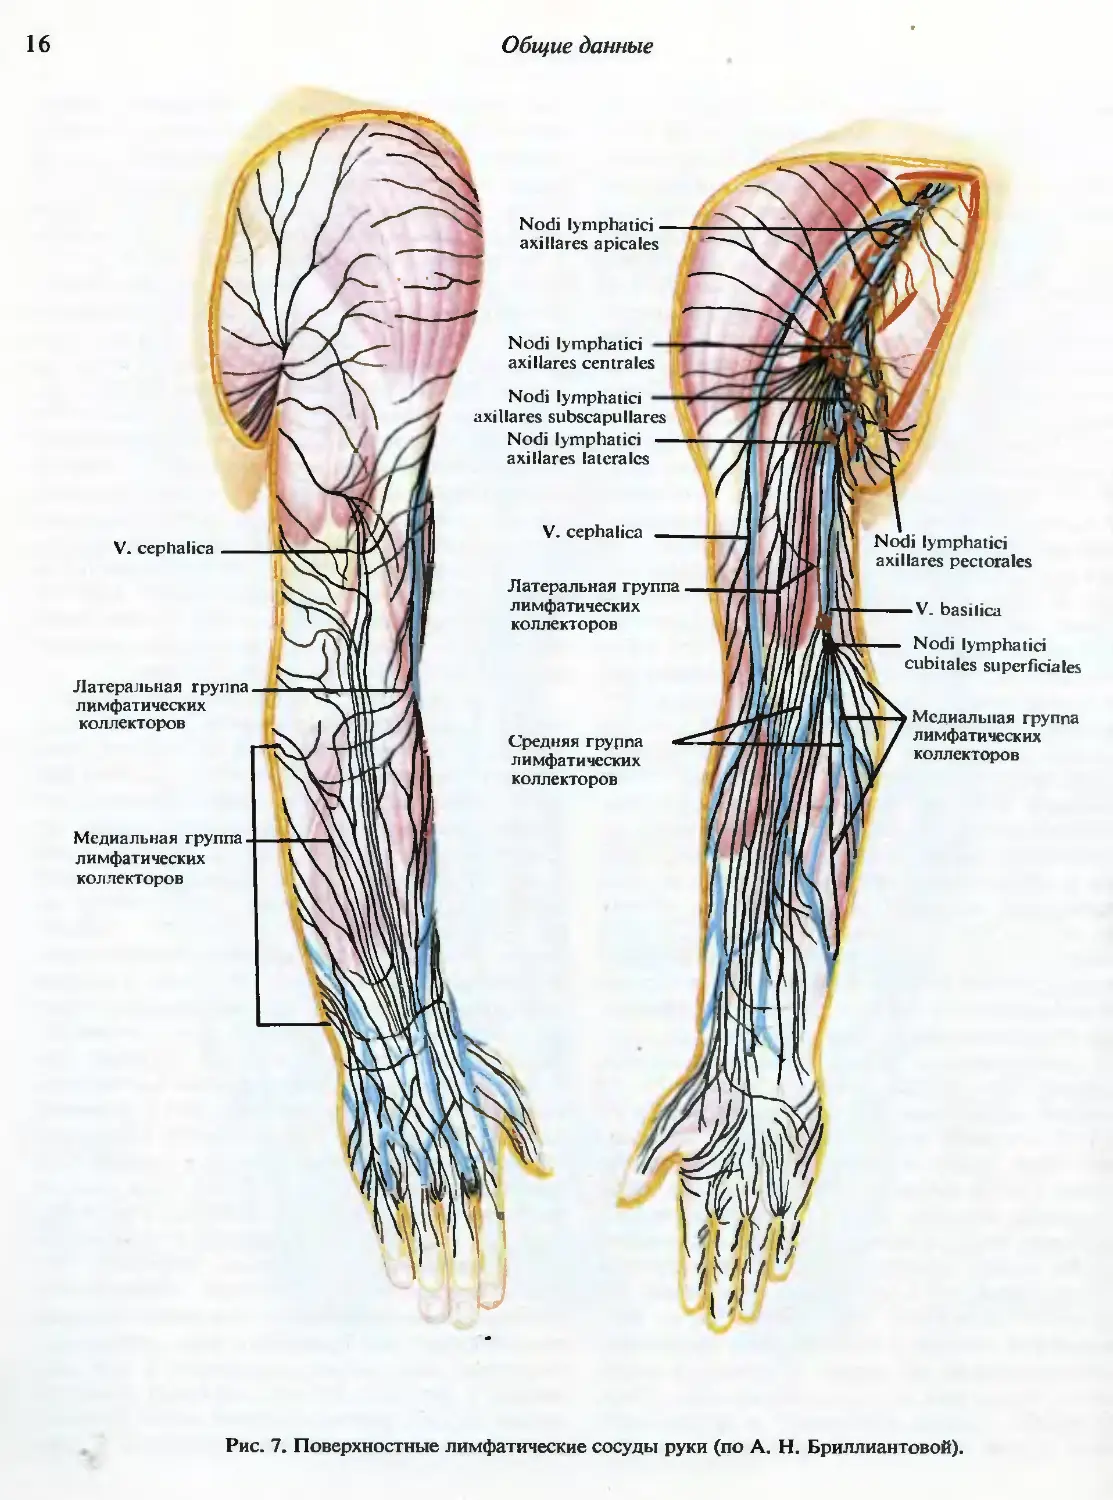 Лимфоузлы кисти. Локтевые лимфатические узлы расположение. Лимфатические узлы верхней конечности. Лимфатическая система верхней конечности анатомия. Регионарные лимфоузлы верхней конечности.